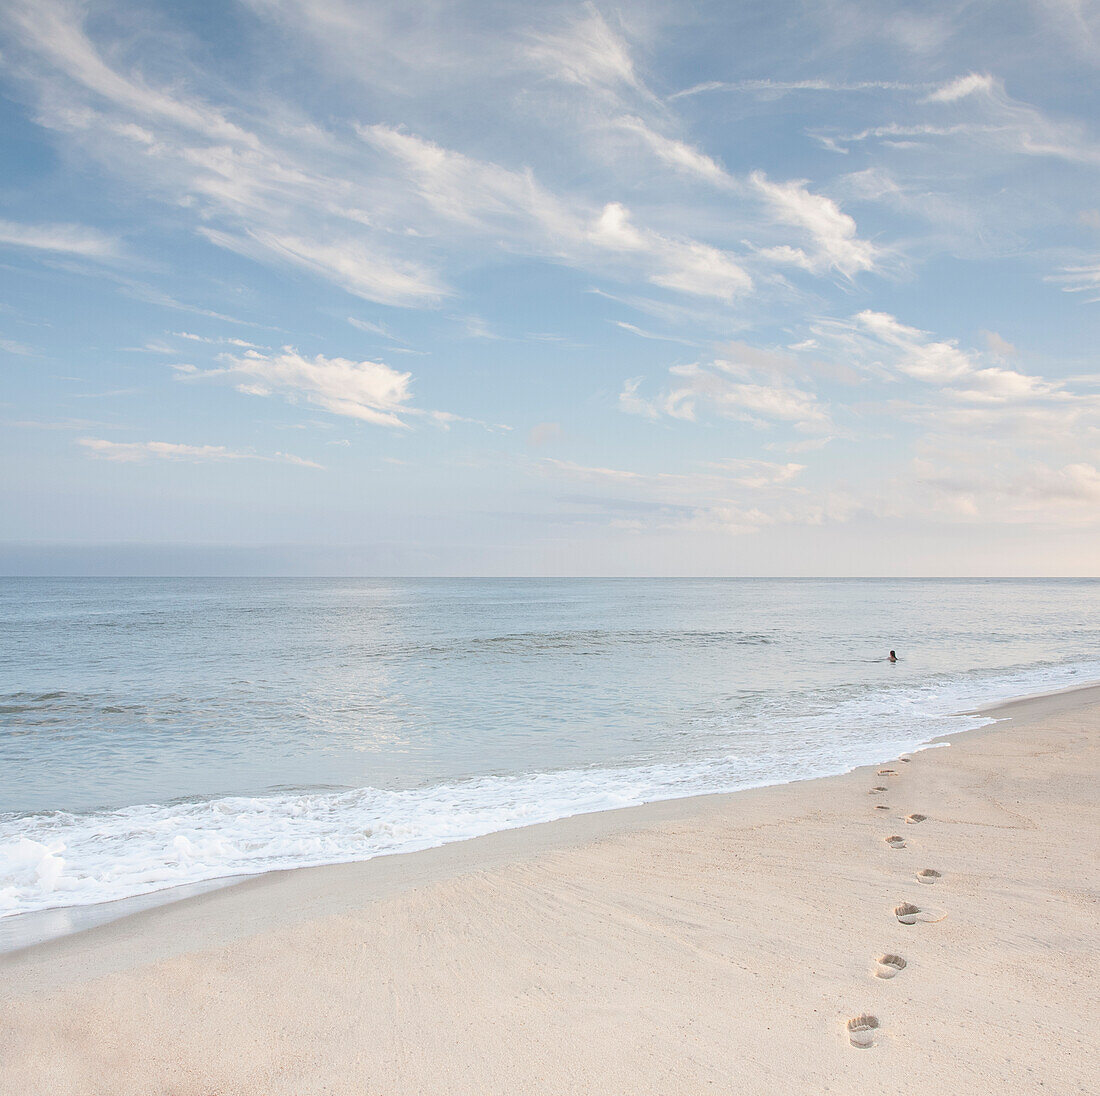 USA, Massachusetts, Cape Cod, Nantucket Island, Fußabdrücke am Strand und eine Frau, die in der Ferne im Meer schwimmt